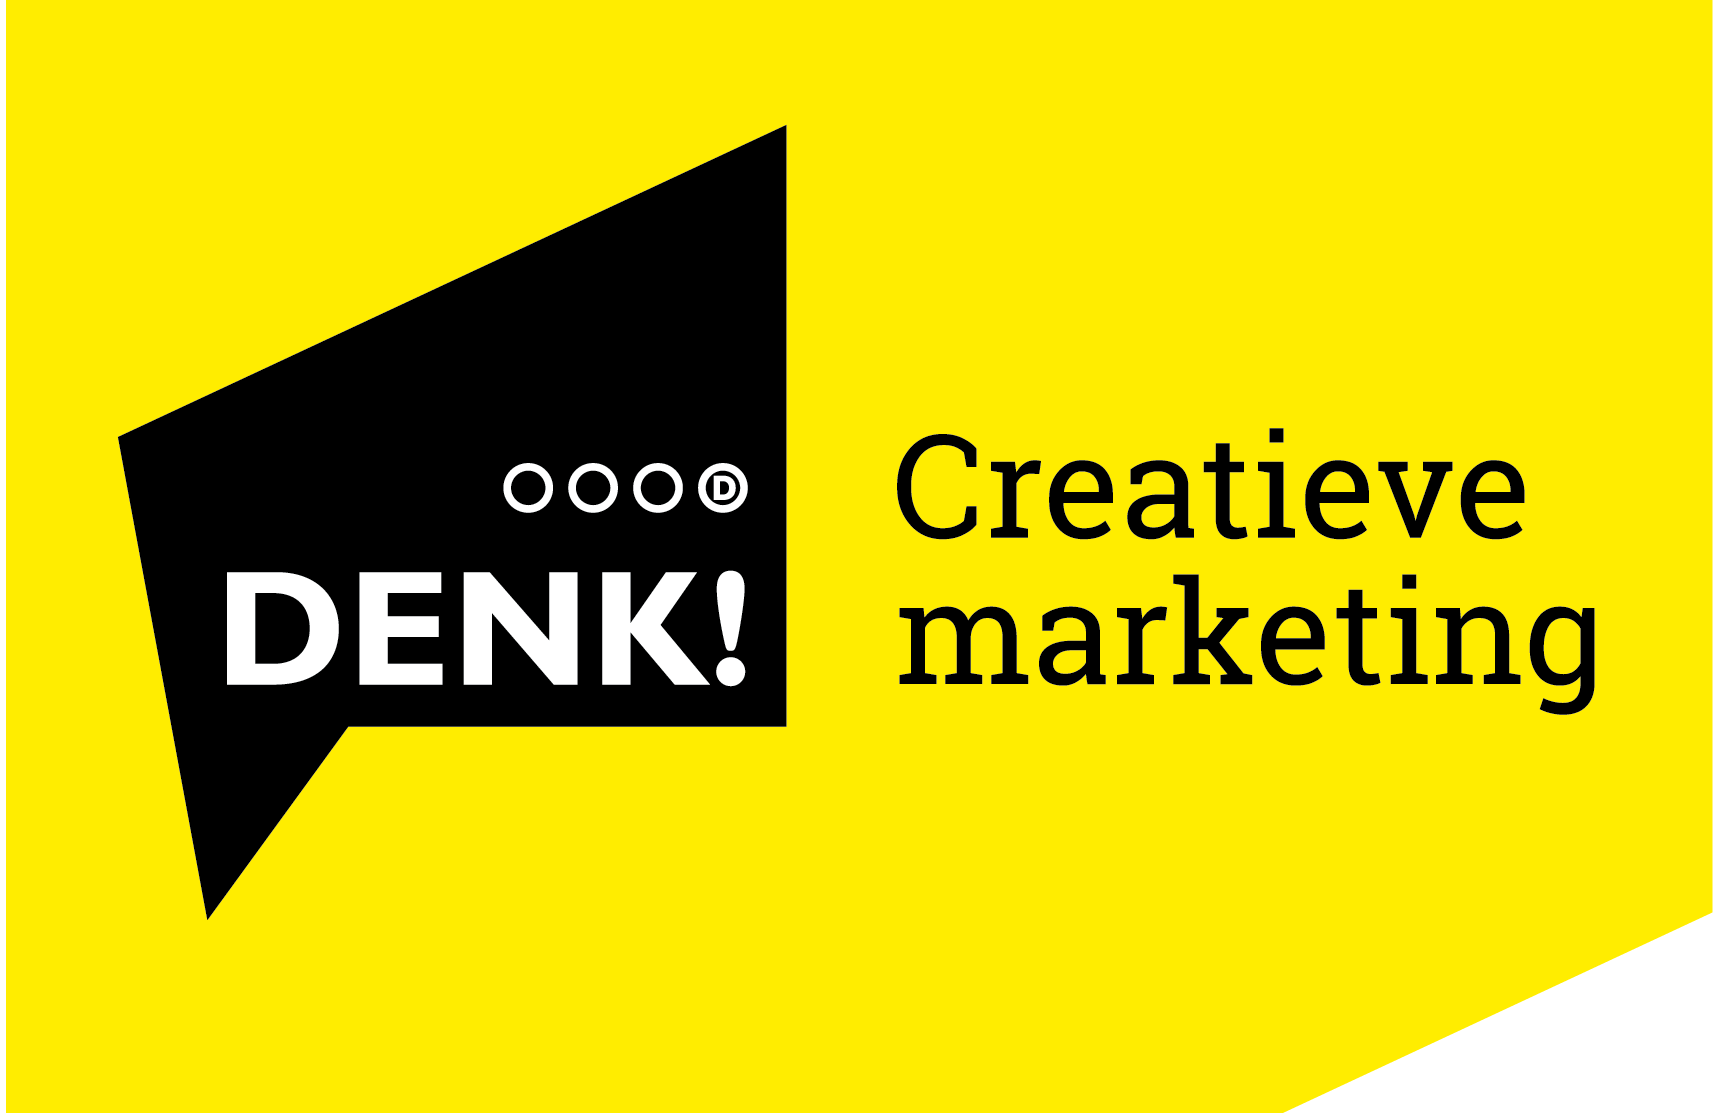 DENK! Creatieve Marketing